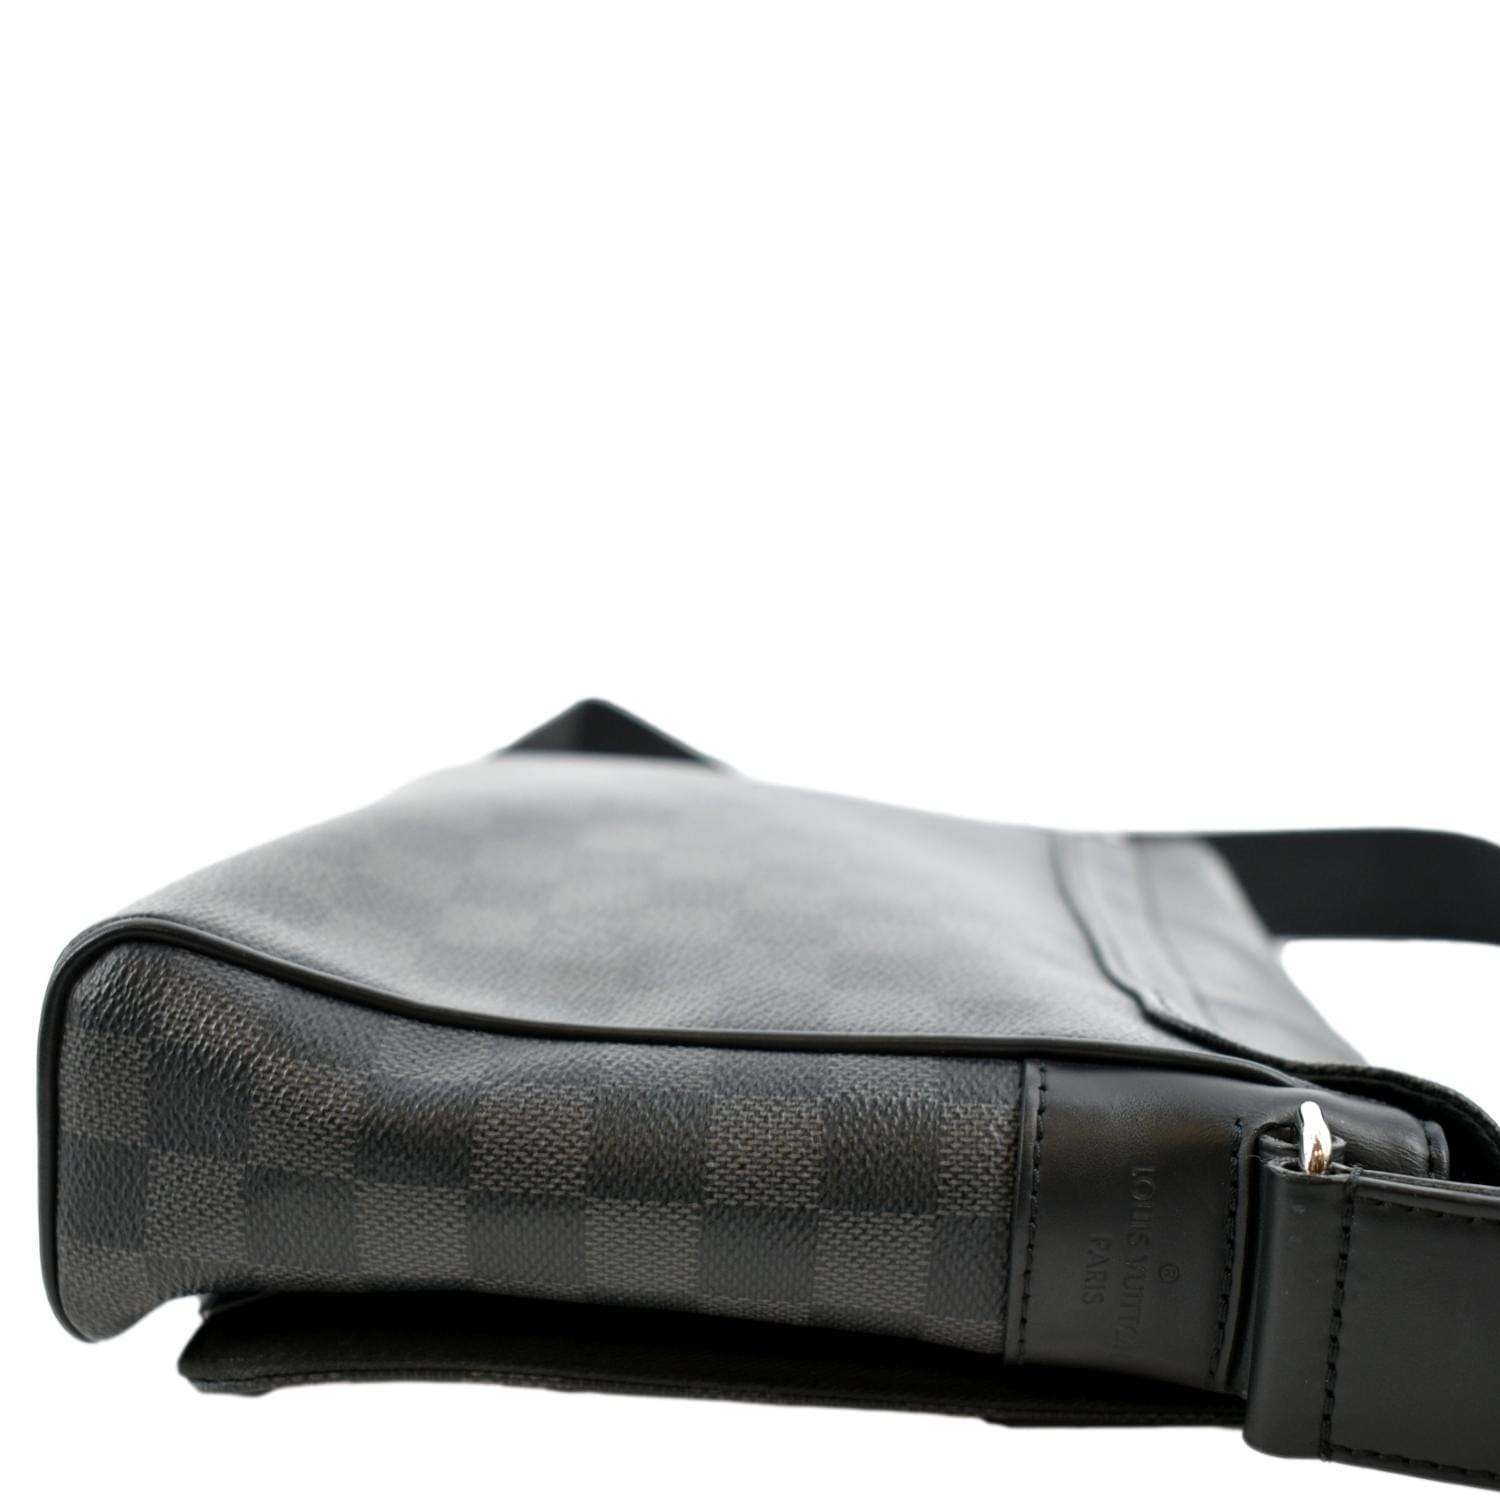 Louis Vuitton District PM Messenger Bag Monogram - Black/Graphite